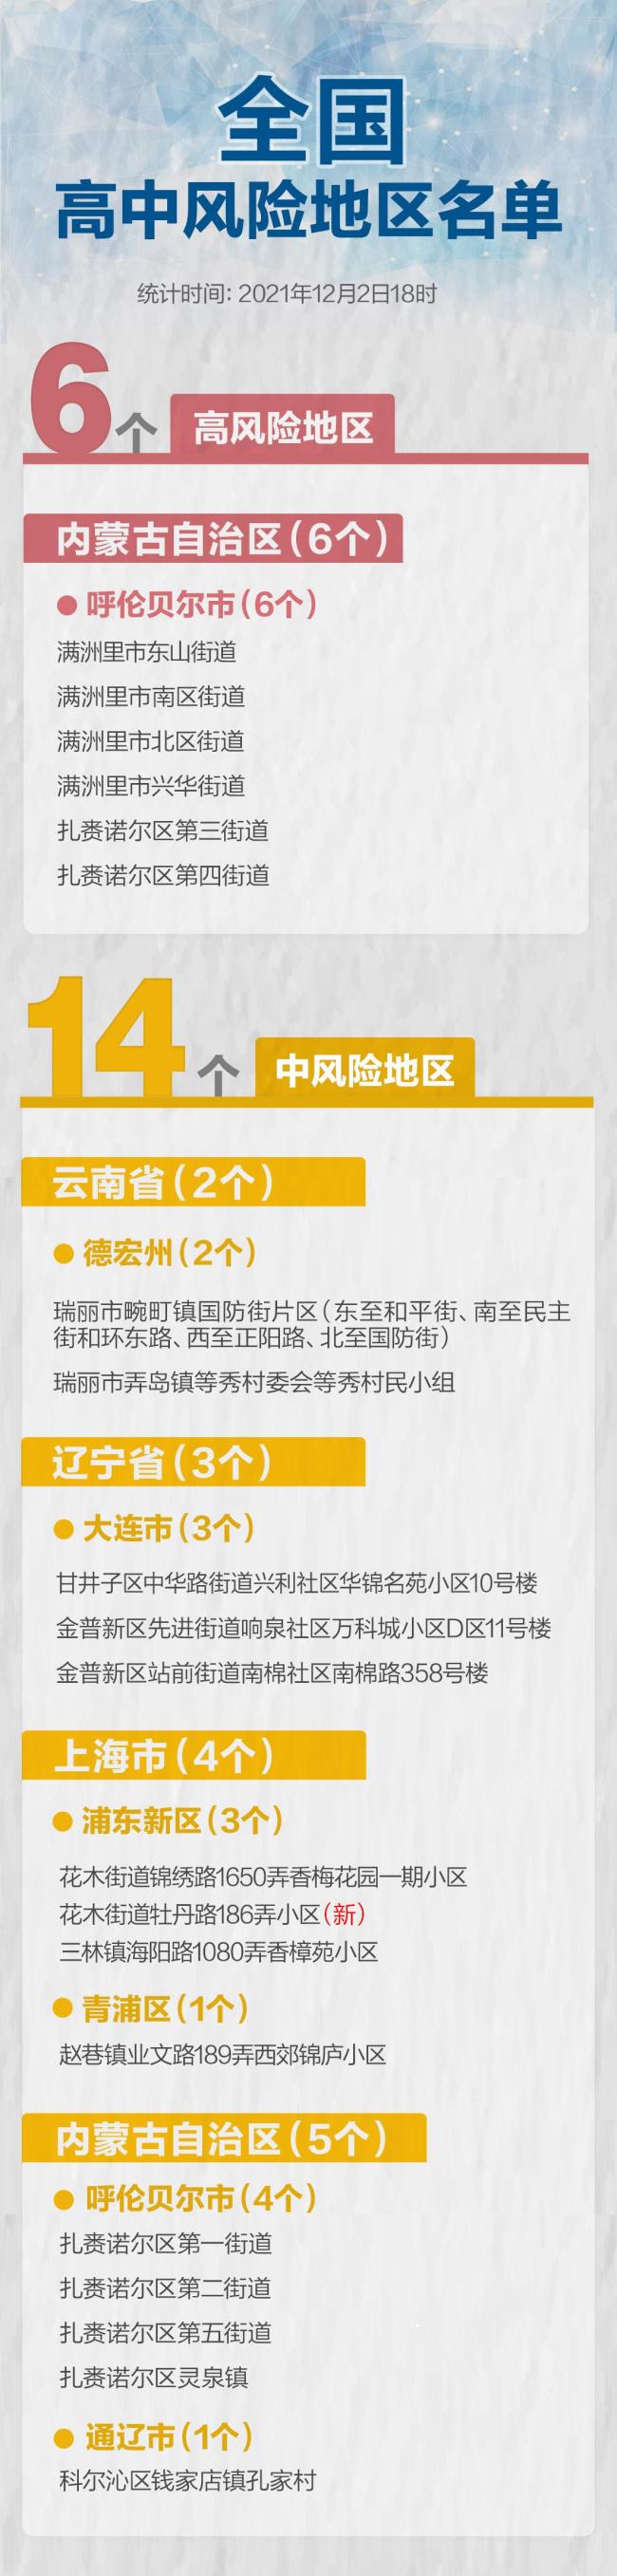 上海新增2例本土确诊病例 中风险区+1 全国高中风险区6+14个